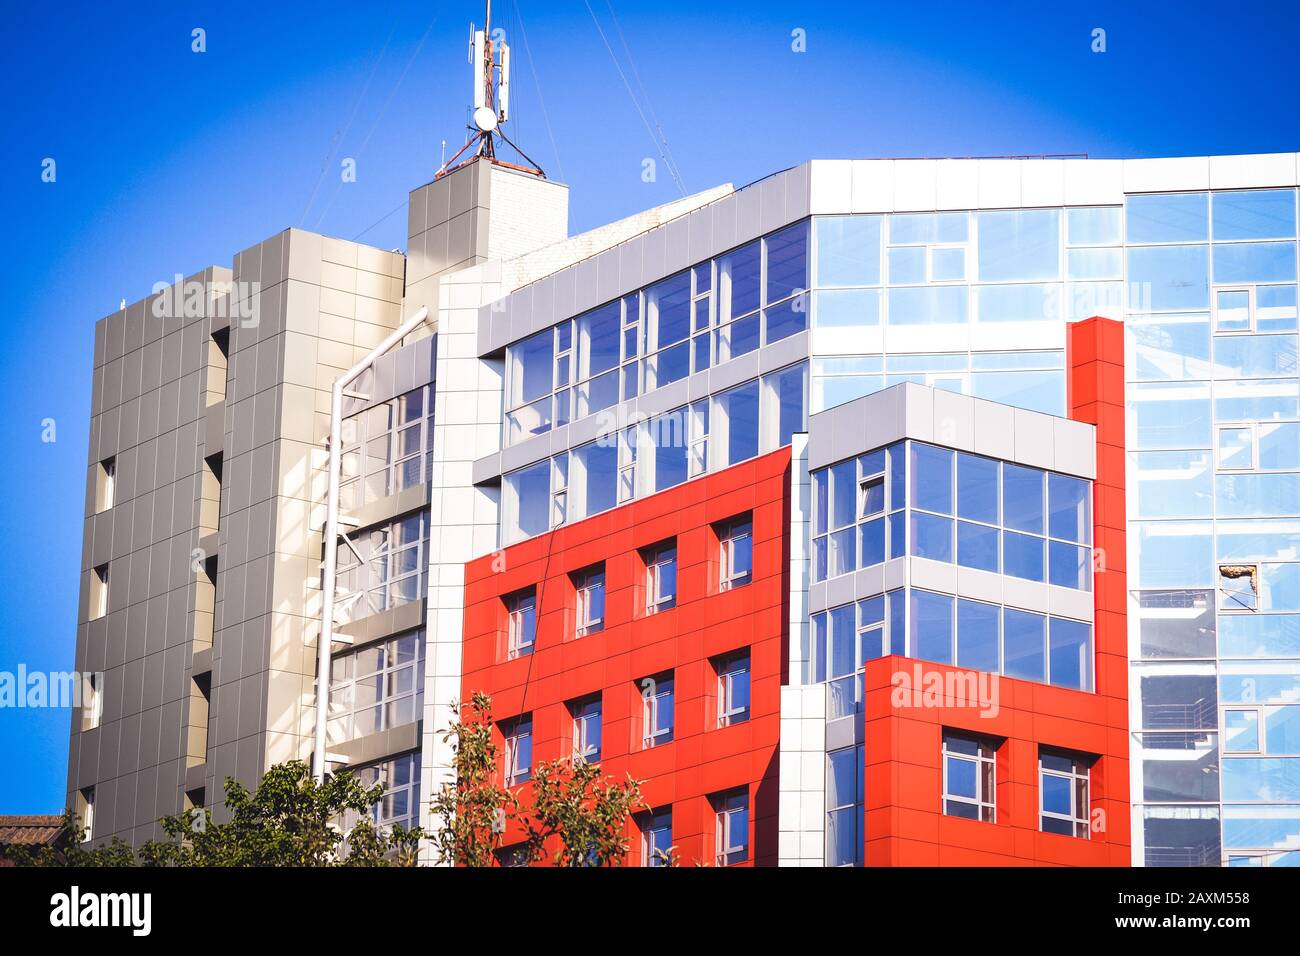 facciata, di fronte alla grande casa rossa e grigia in stile high-tech su una luminosa giornata di sole su sfondo blu cielo Foto Stock